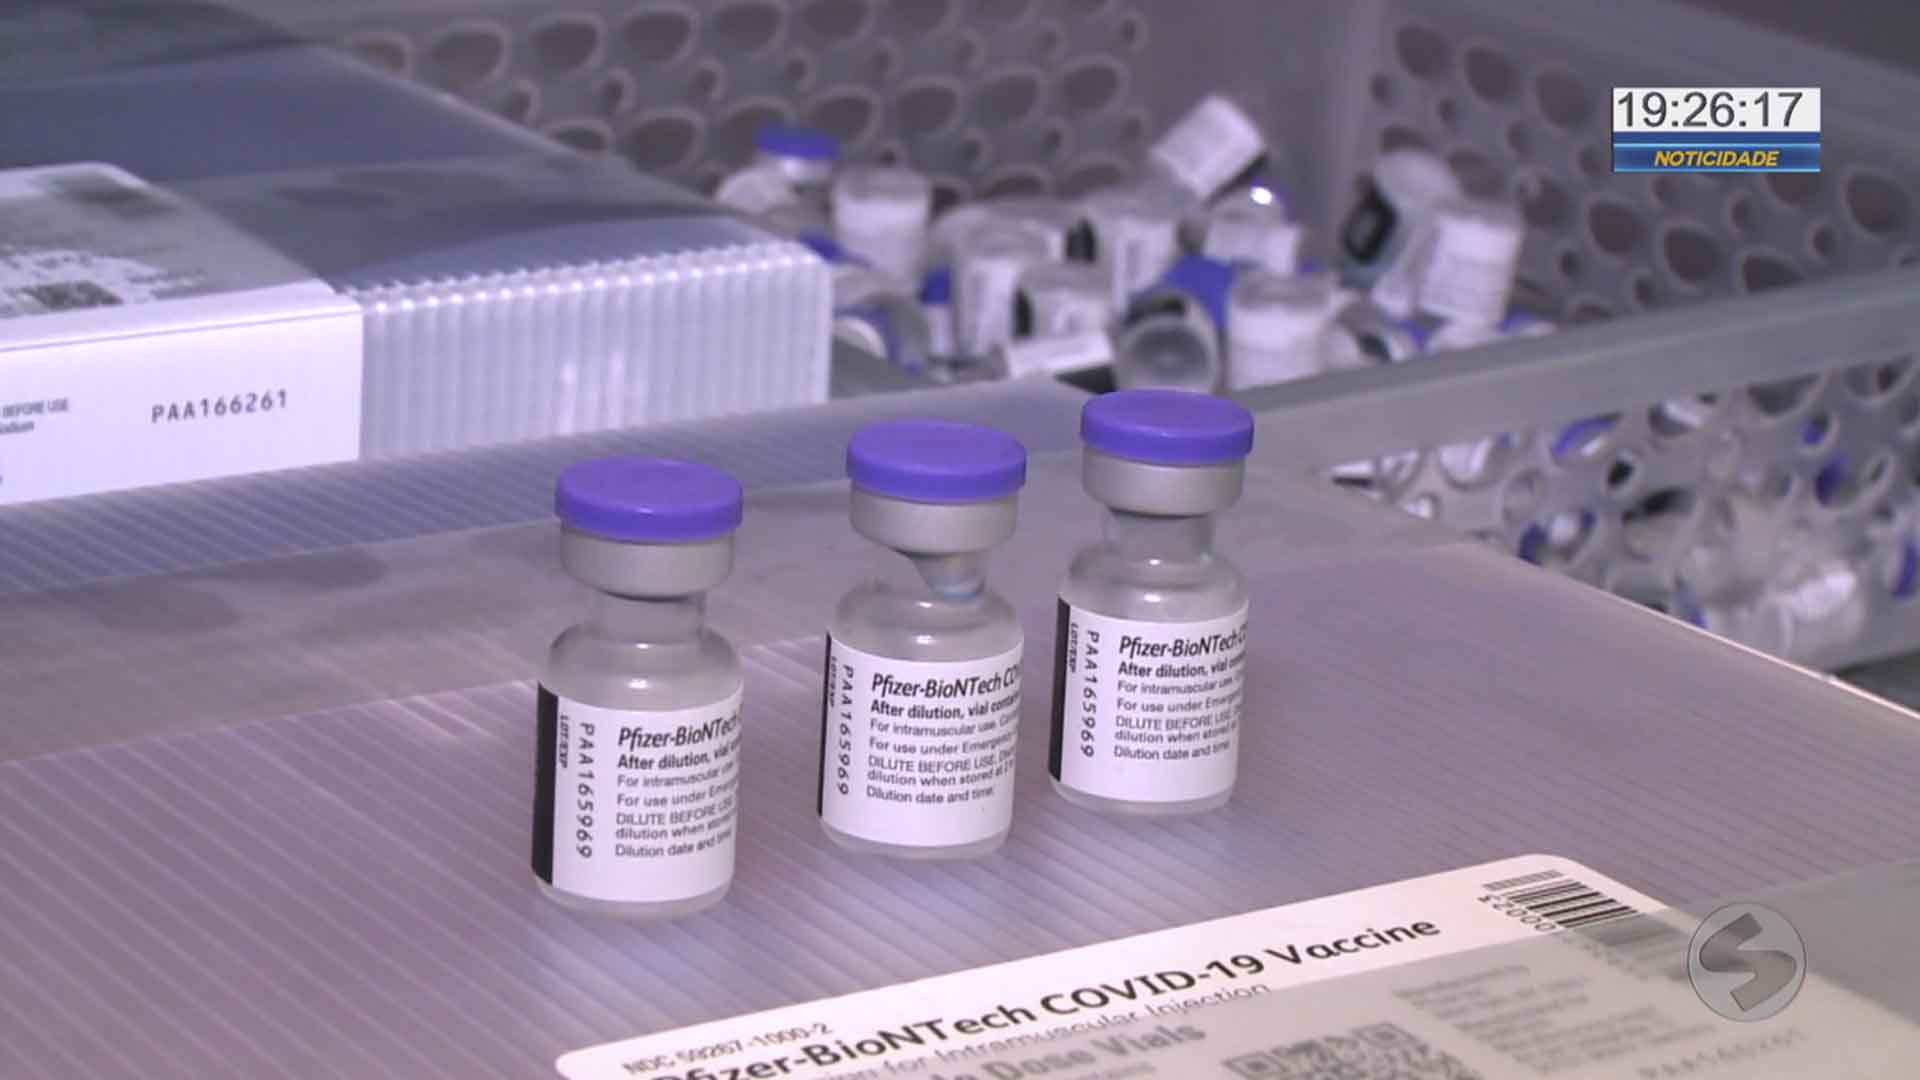 Vacinas Pfizer chegam em Sorocaba